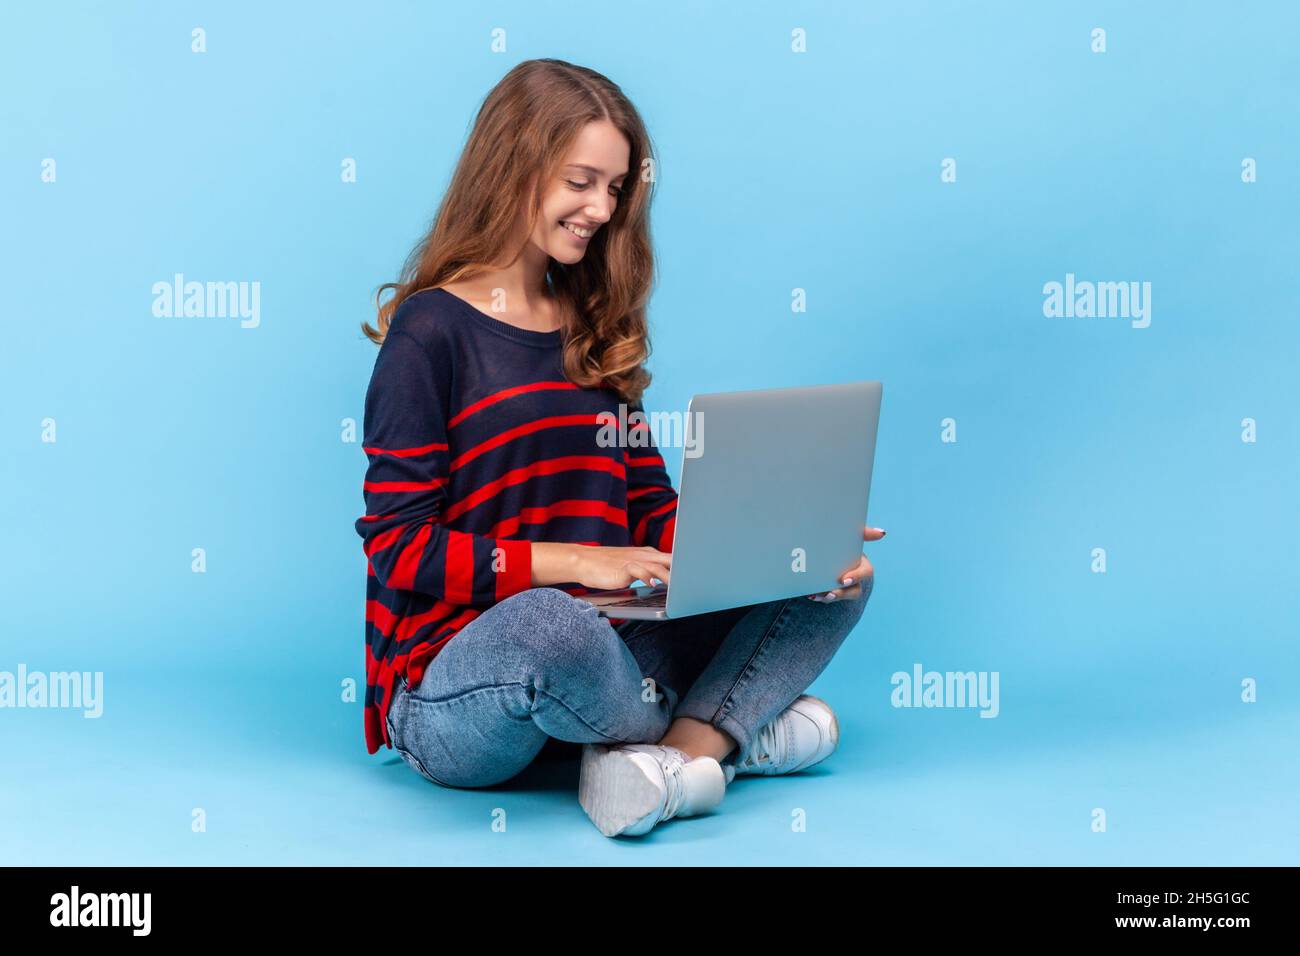 Die positive Frau trägt einen gestreiften Pullover im lässigen Stil, sitzt mit gekreuzten Beinen und arbeitet online auf dem Schoß und ist mit ihrem freiberuflichen Job zufrieden. Innenaufnahme des Studios isoliert auf blauem Hintergrund. Stockfoto